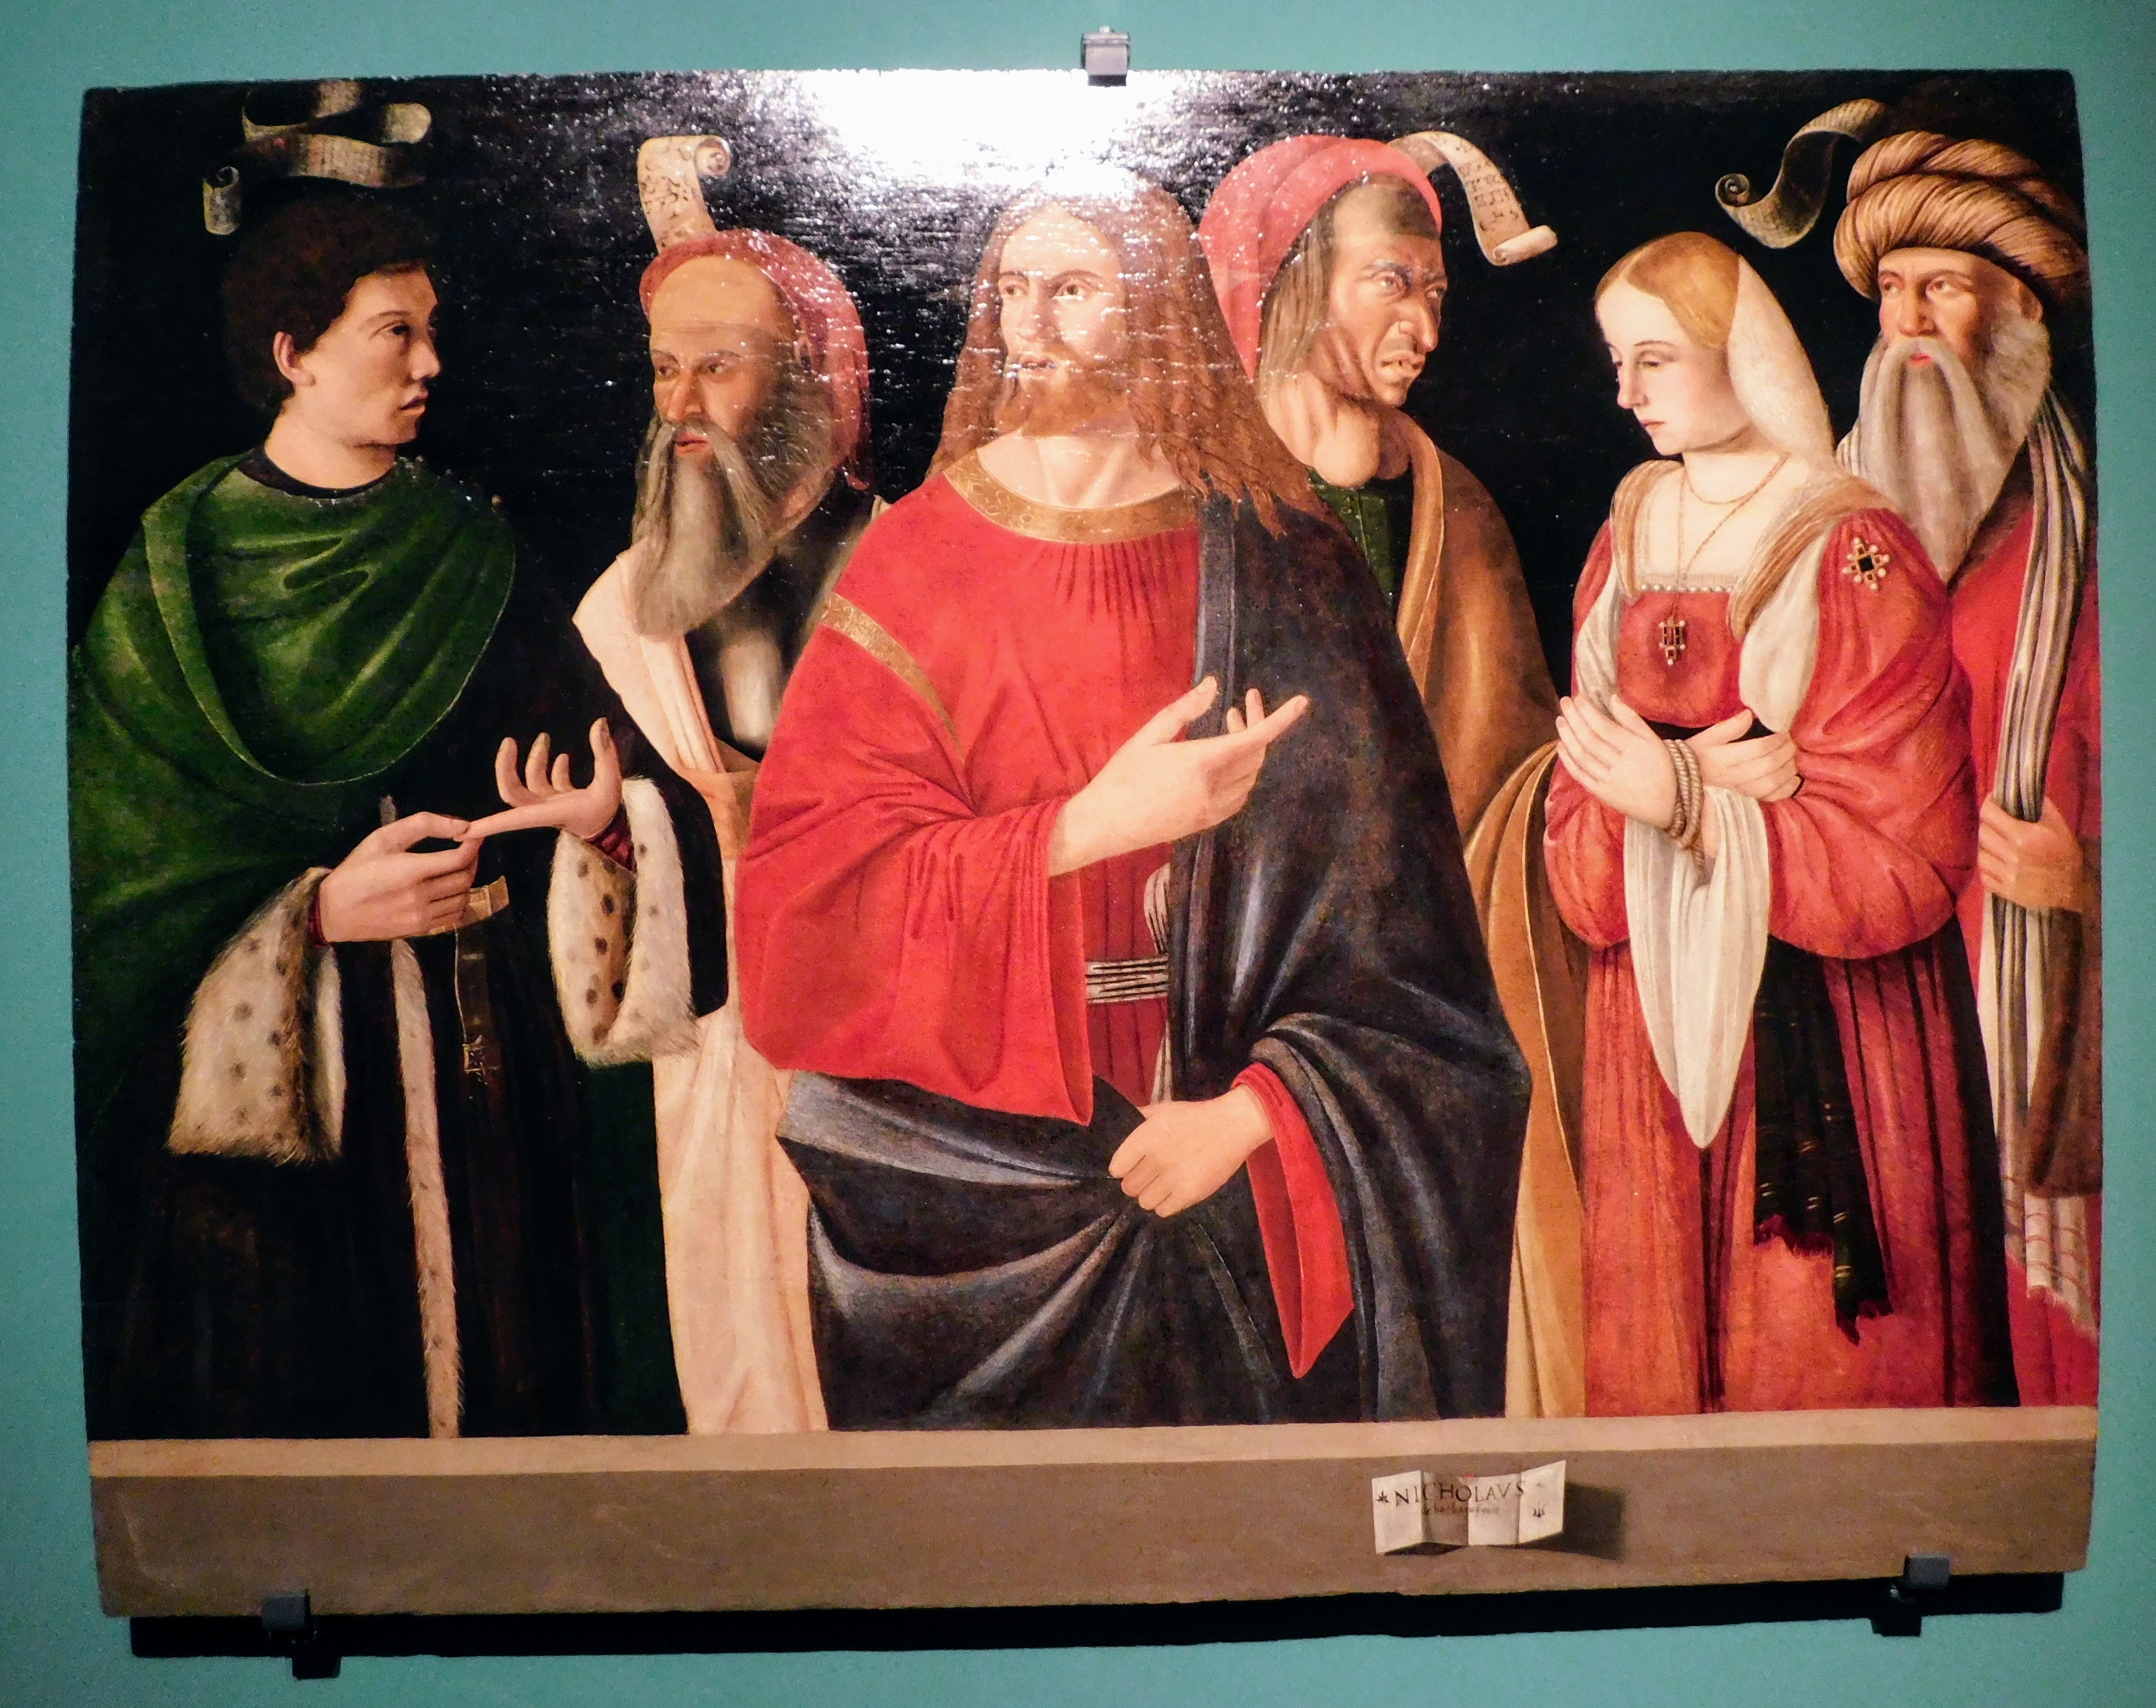 La mostra La fragilità della bellezza. Tiziano, Van Dyck, Twombly e altri 200 capolavori restaurati